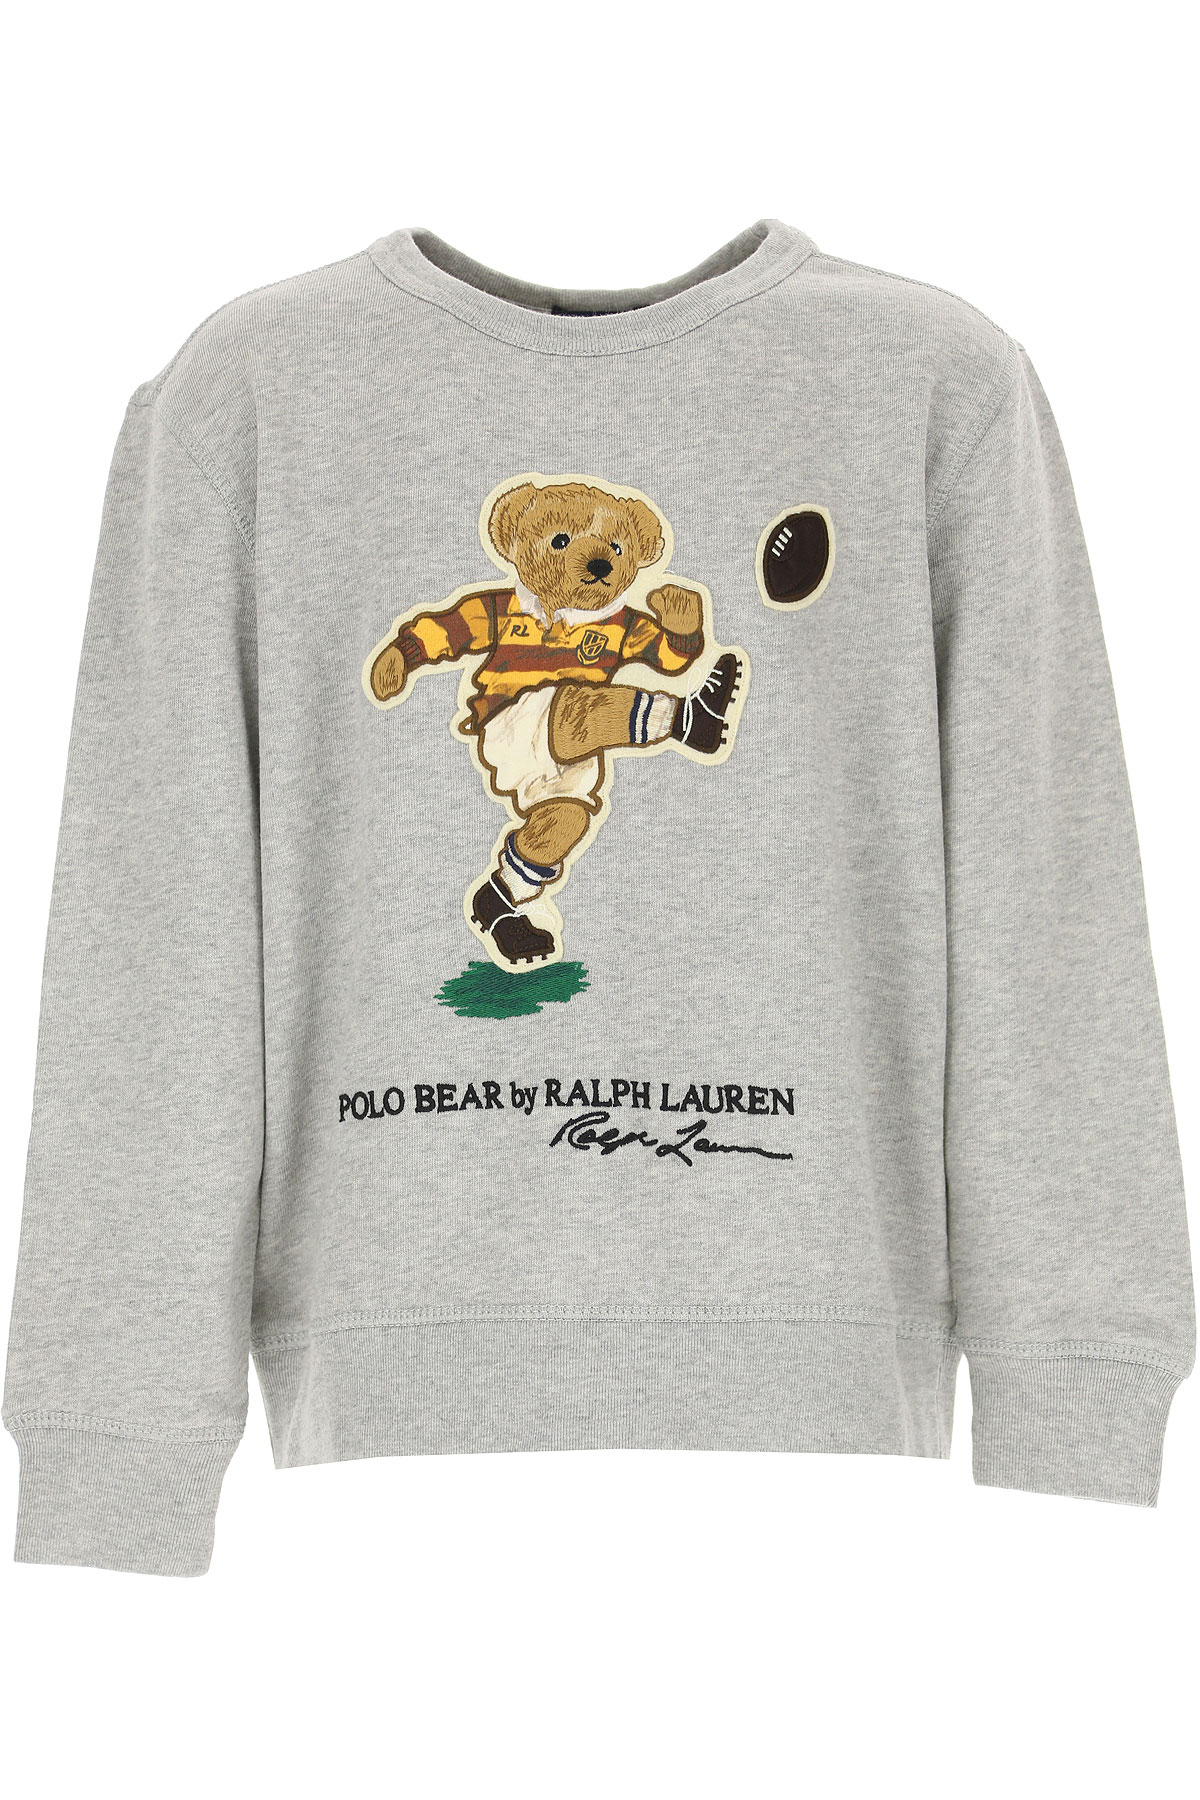 Ralph Lauren Kinder Sweatshirt & Kapuzenpullover für Jungen Günstig im Sale, Grau, Baumwolle, 2017, 5Y 6Y 7Y